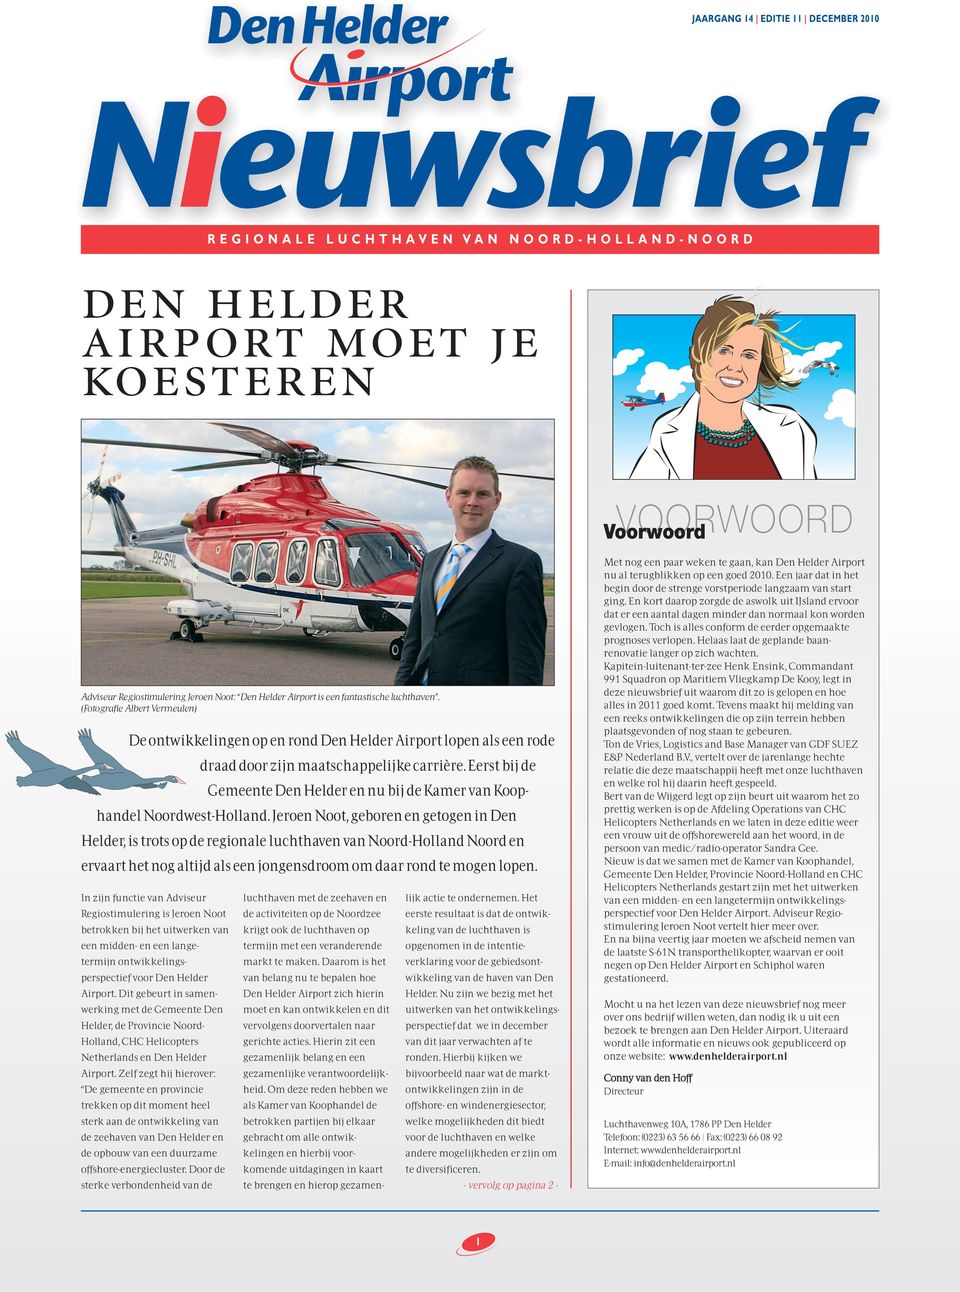 (Fotografie Albert Vermeulen) De ontwikkelingen op en rond Den Helder Airport lopen als een rode In zijn functie van Adviseur Regiostimulering is Jeroen Noot betrokken bij het uitwerken van een